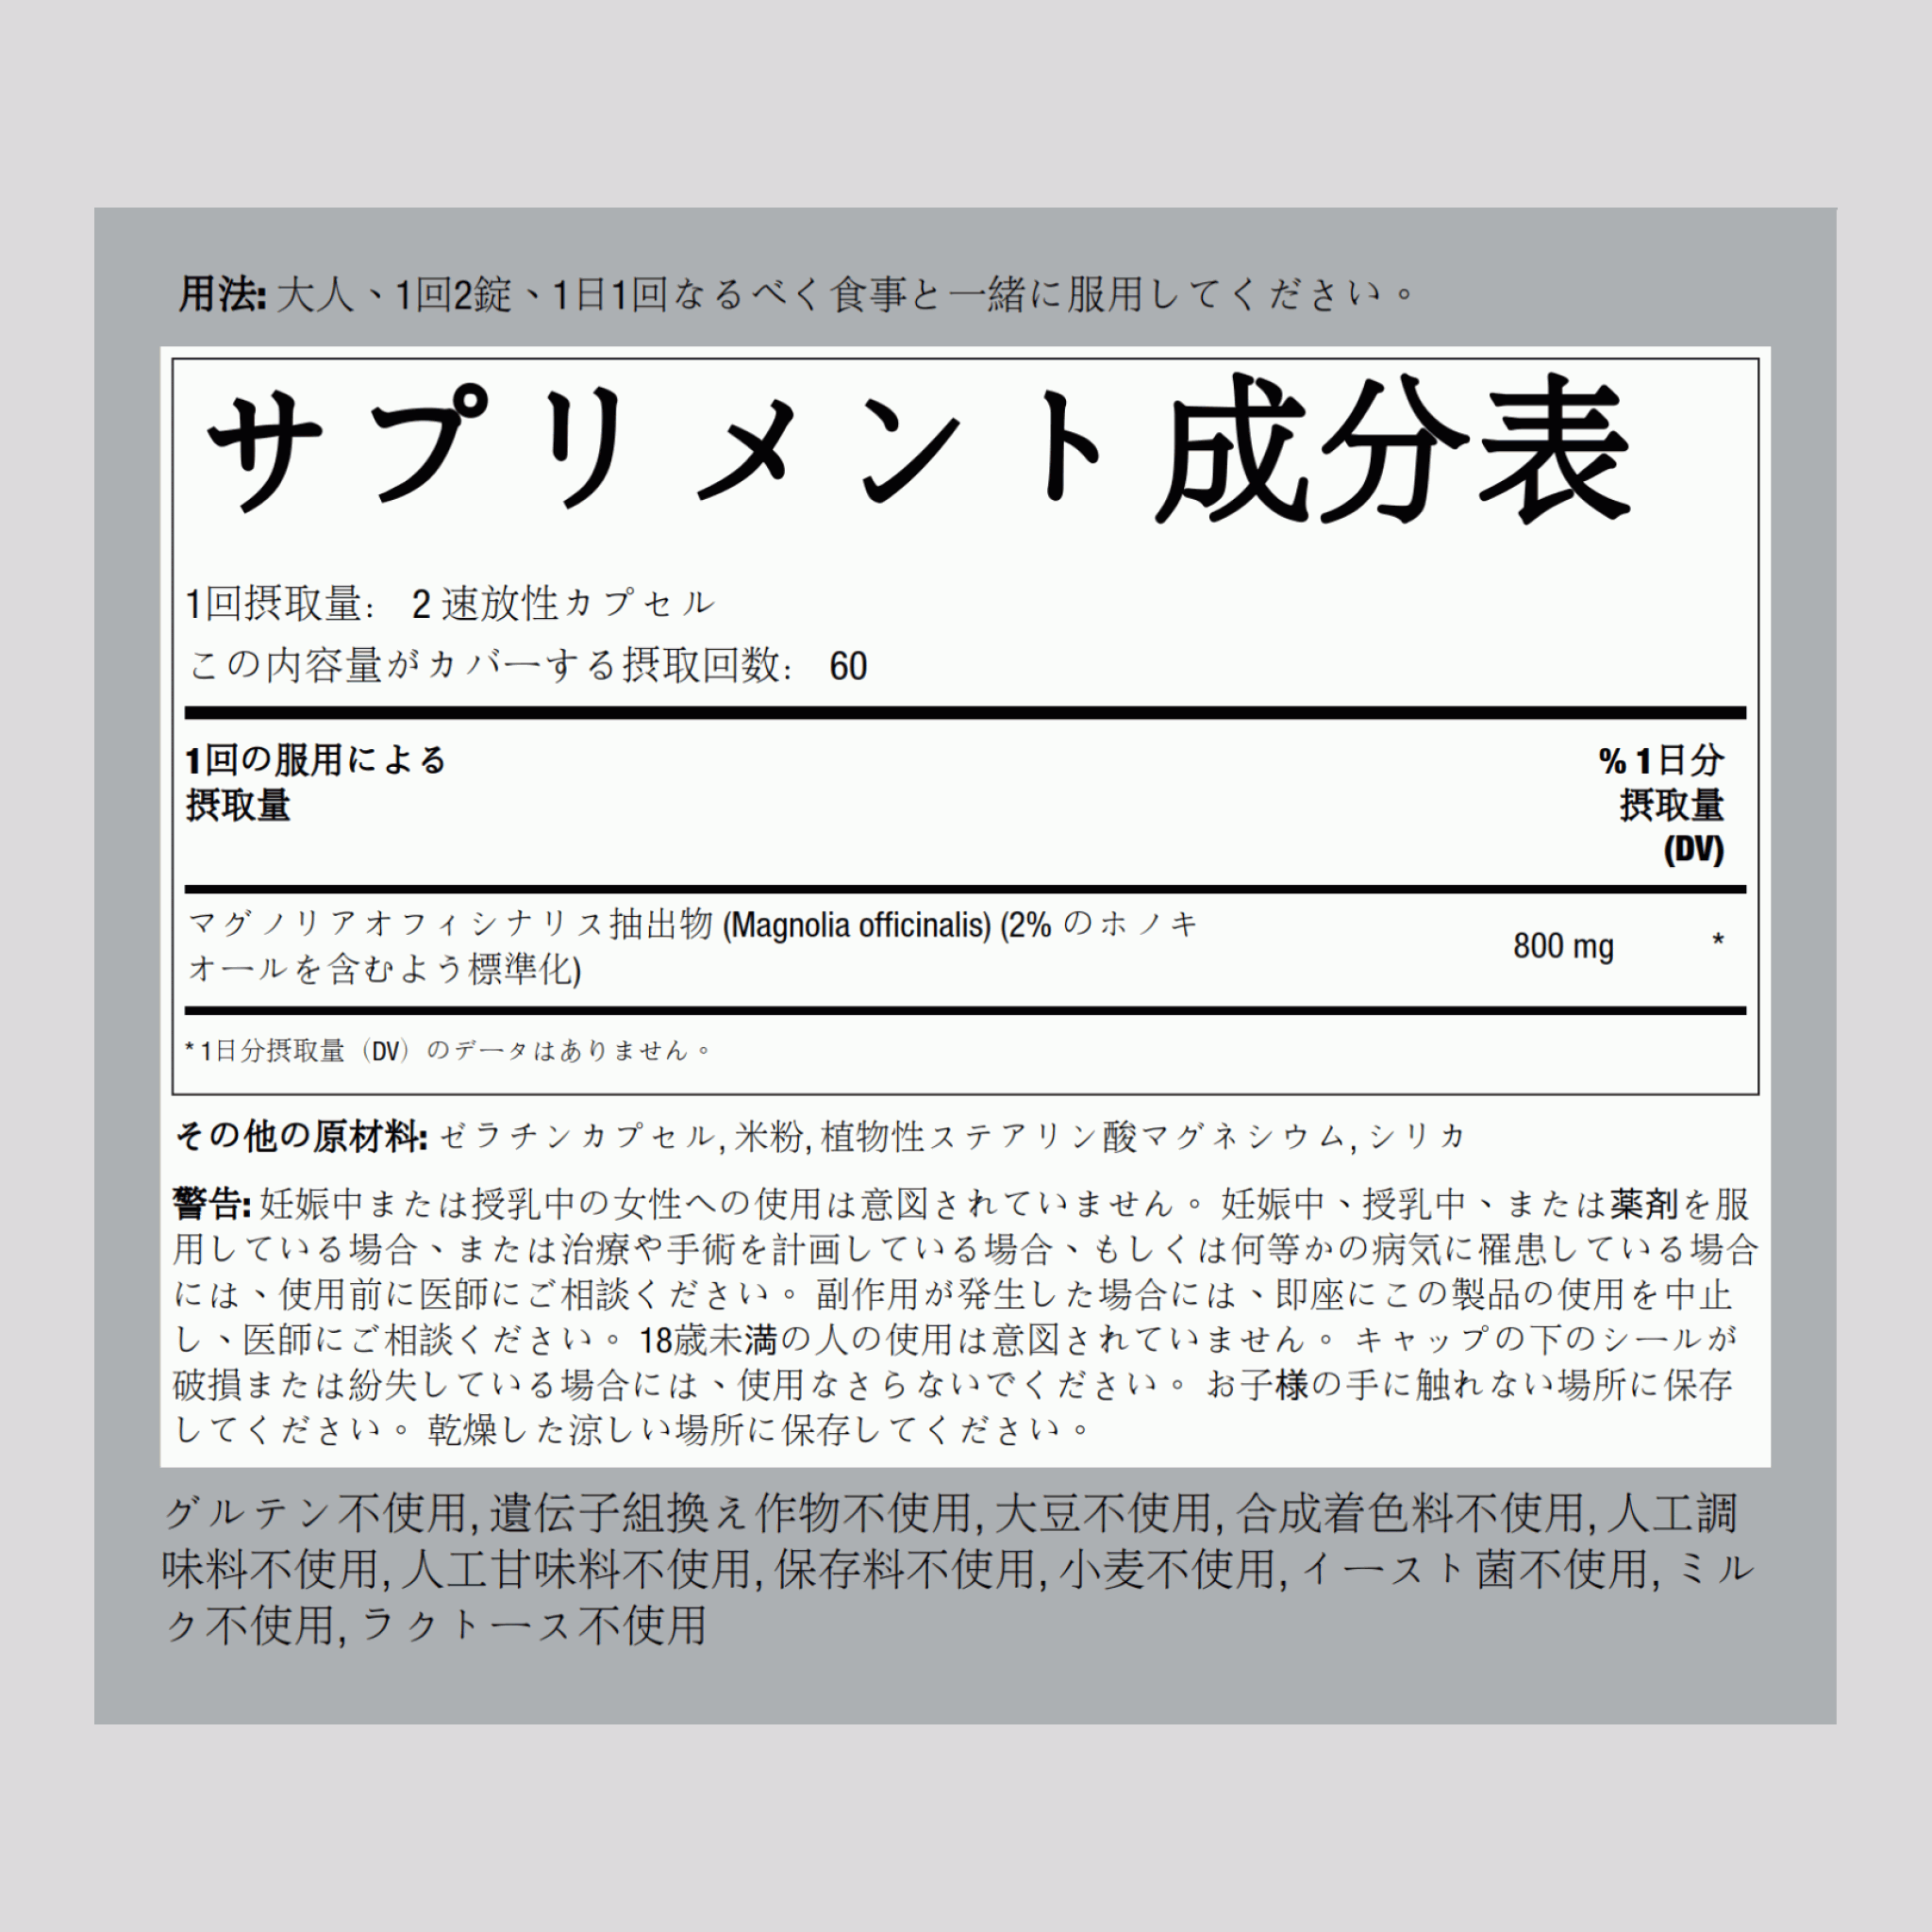 マグノリア樹皮 (コウボク) (ホオノキオール) 800 mg 120 速放性カプセル     